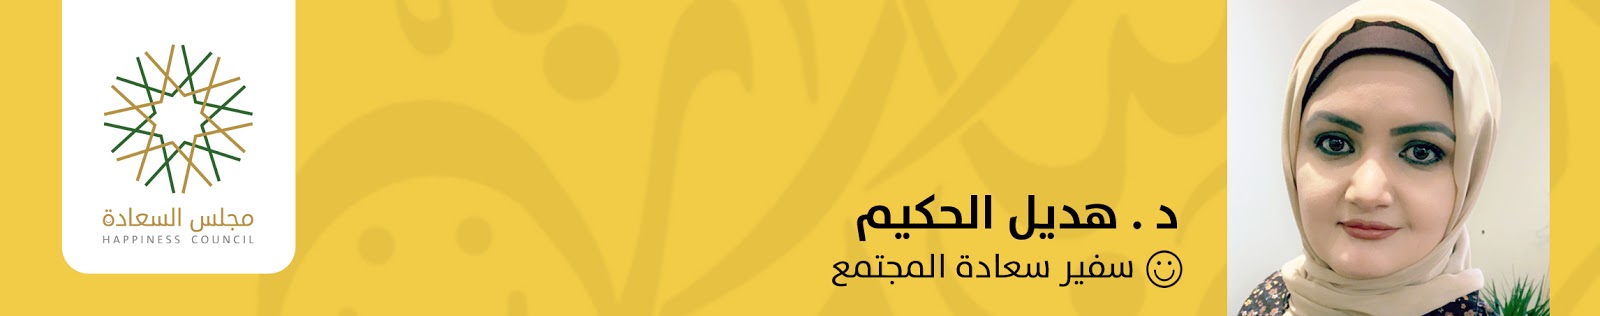 د. هديل الحكيم، سفير سعادة المجتمع - مجلس السعادة السودان